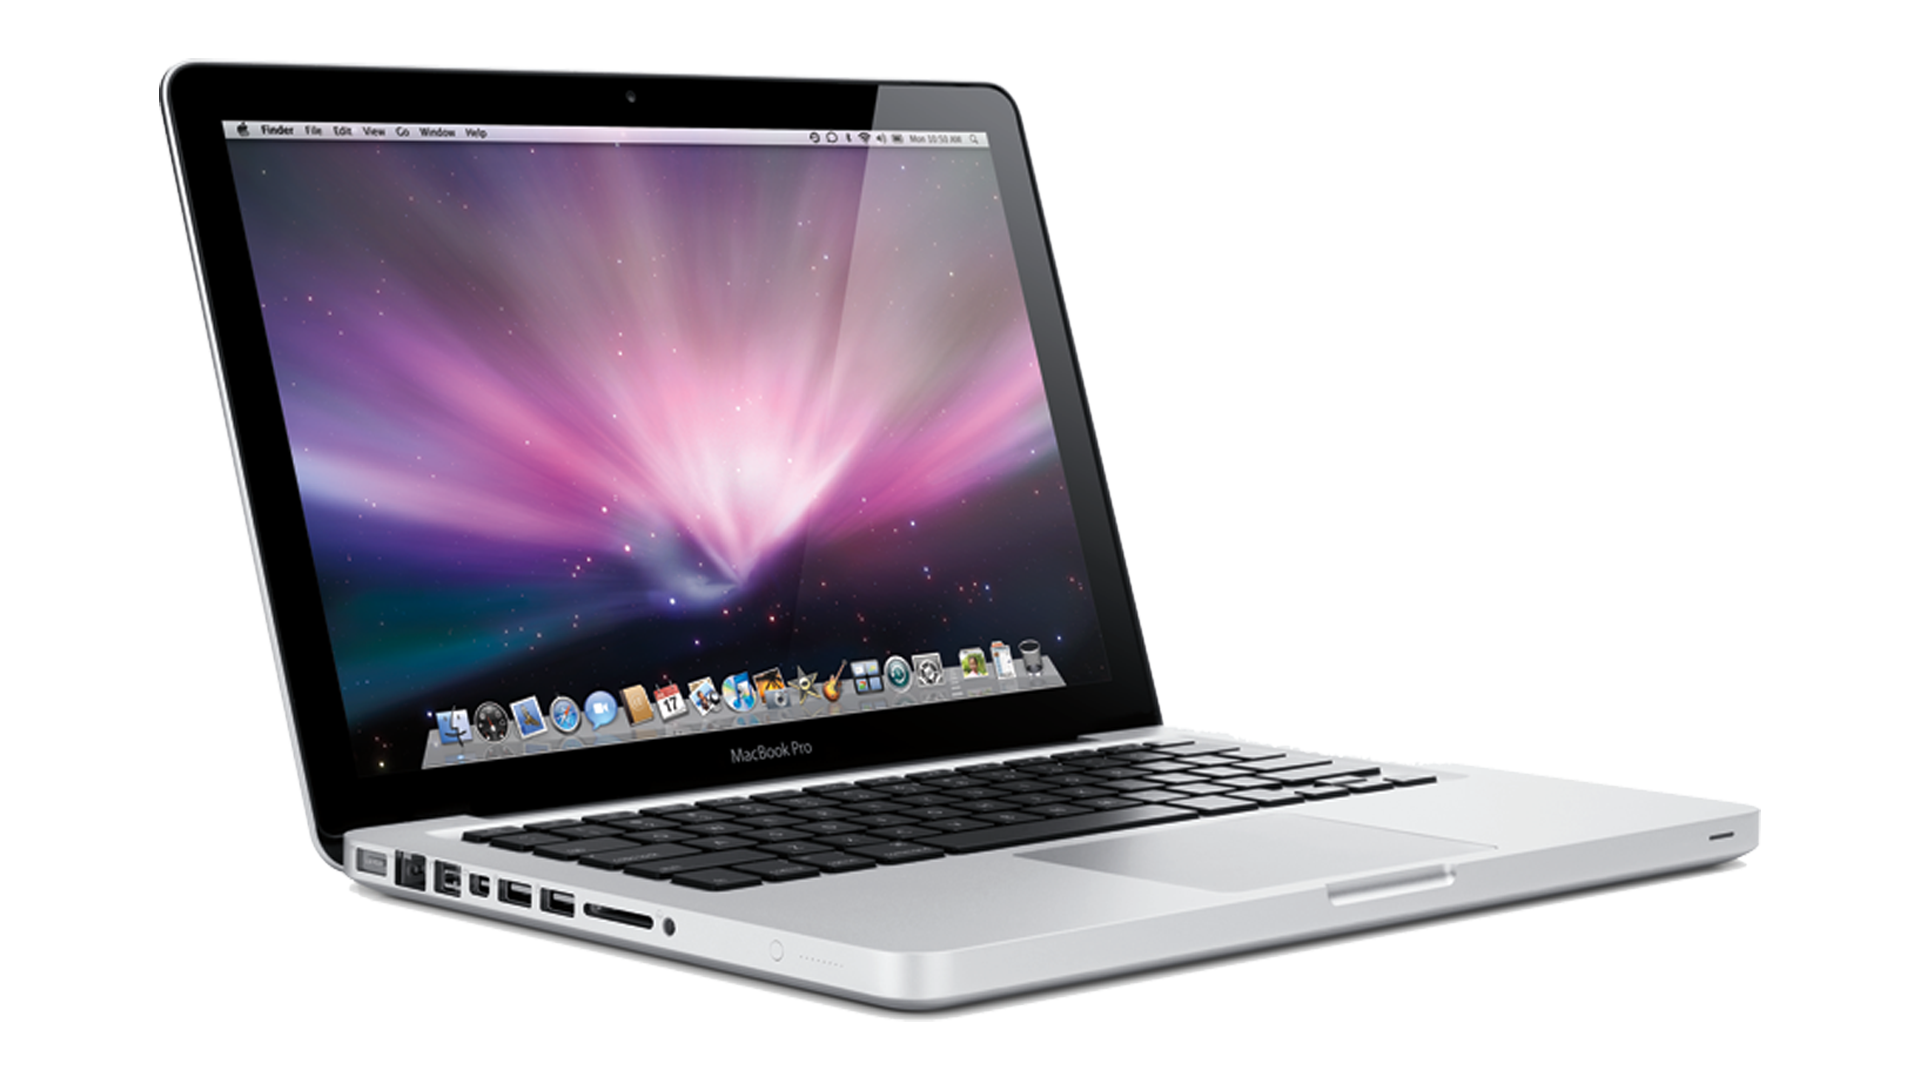 Modèle MacBook Pro 13 2011 pouces